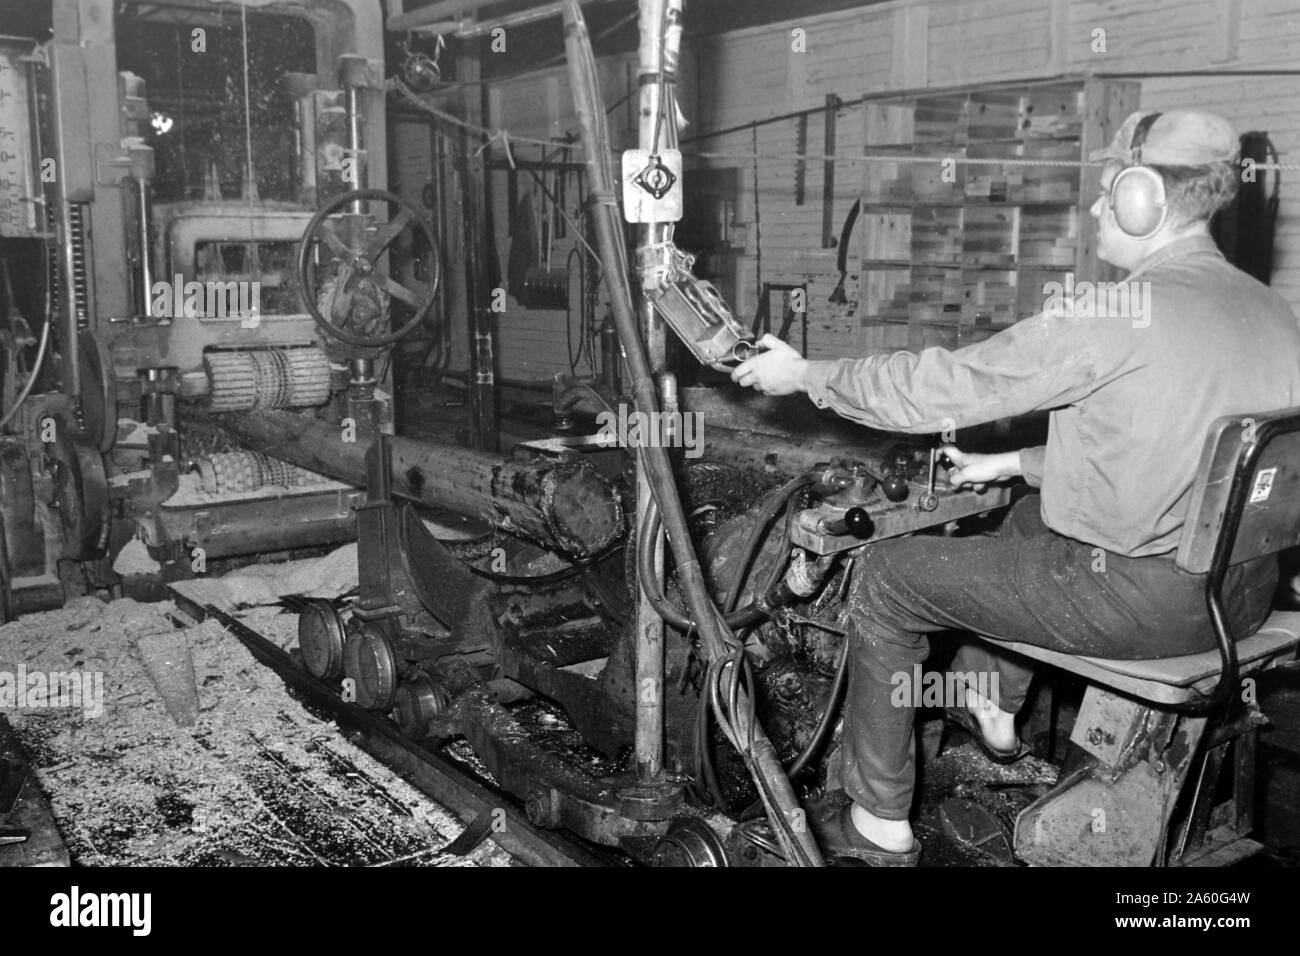 Mitarbeiter des Sägewerks beginnen mit dem zurechtschneiden, Insjön Schweden 1969. Mitarbeiter des Sägewerks sind das Schneiden der Protokolle in der richtigen Größe, Insjön Schweden 1969. Stockfoto